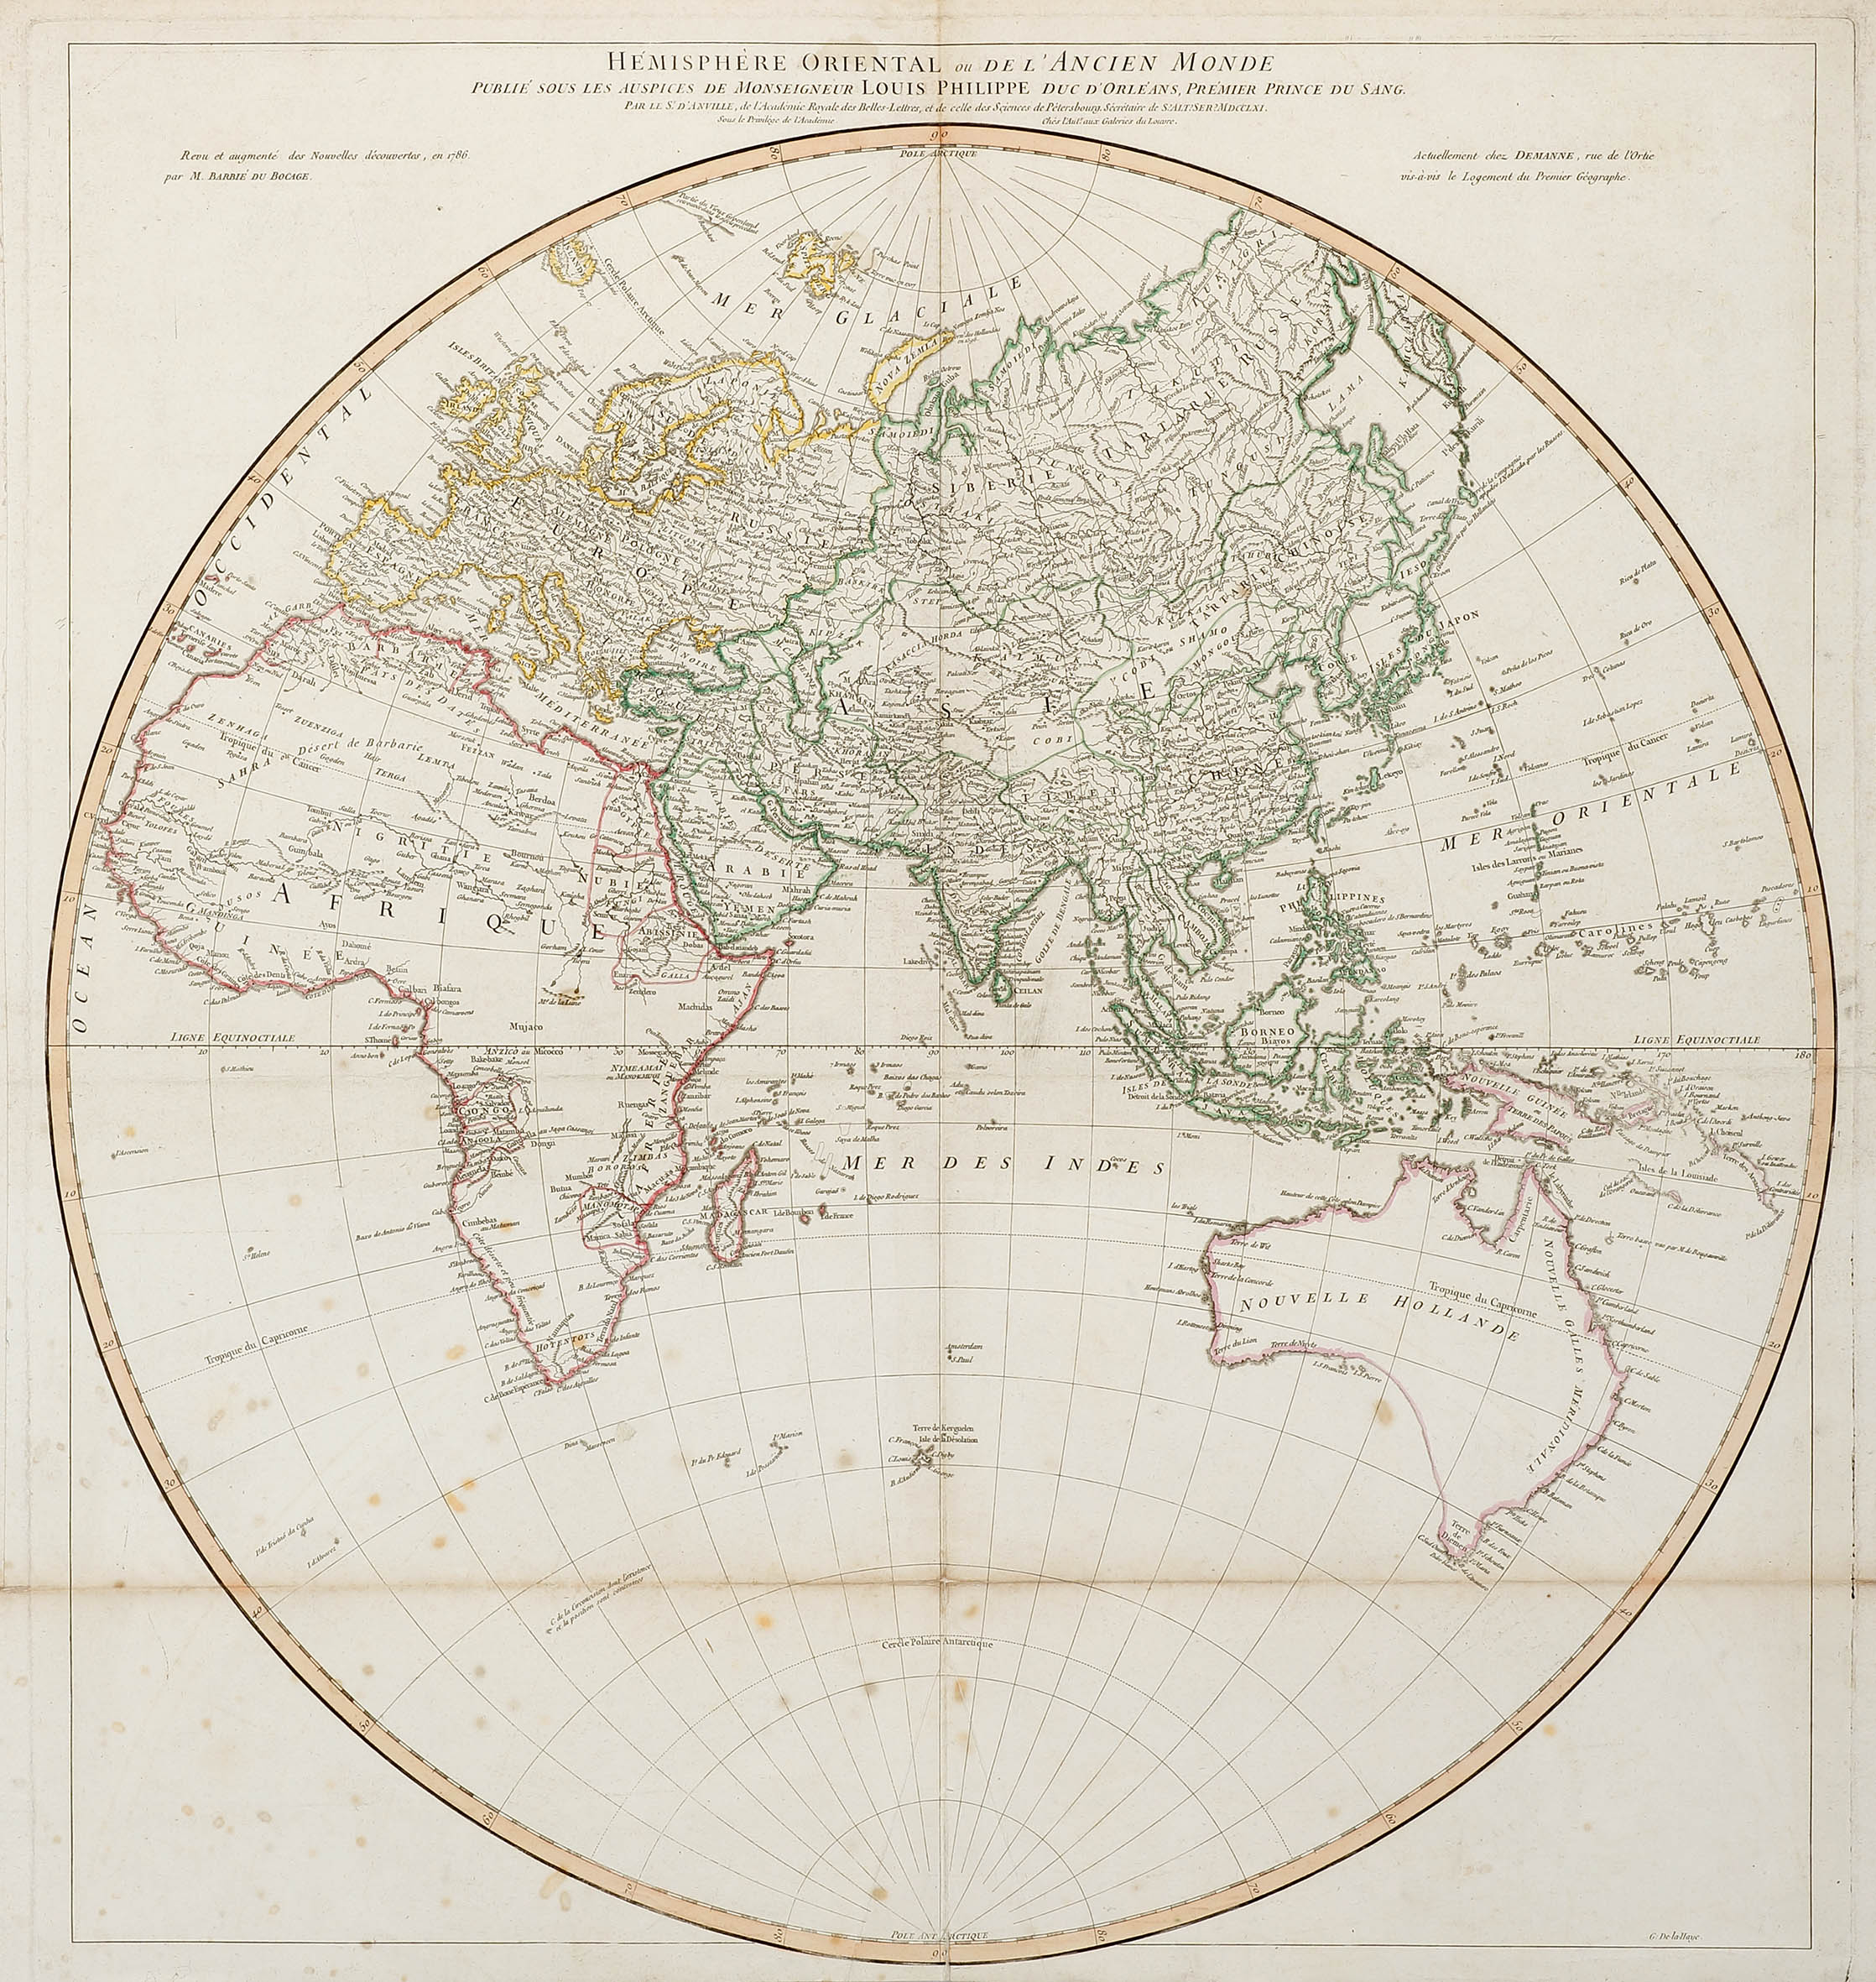 Hemisphere Oriental ou De L'Ancien Monde Publie sous les Auspices de Monseigneur Louis Philippe duc D'Orleans, Premier Prince du Sang. - Antique Map from 1786